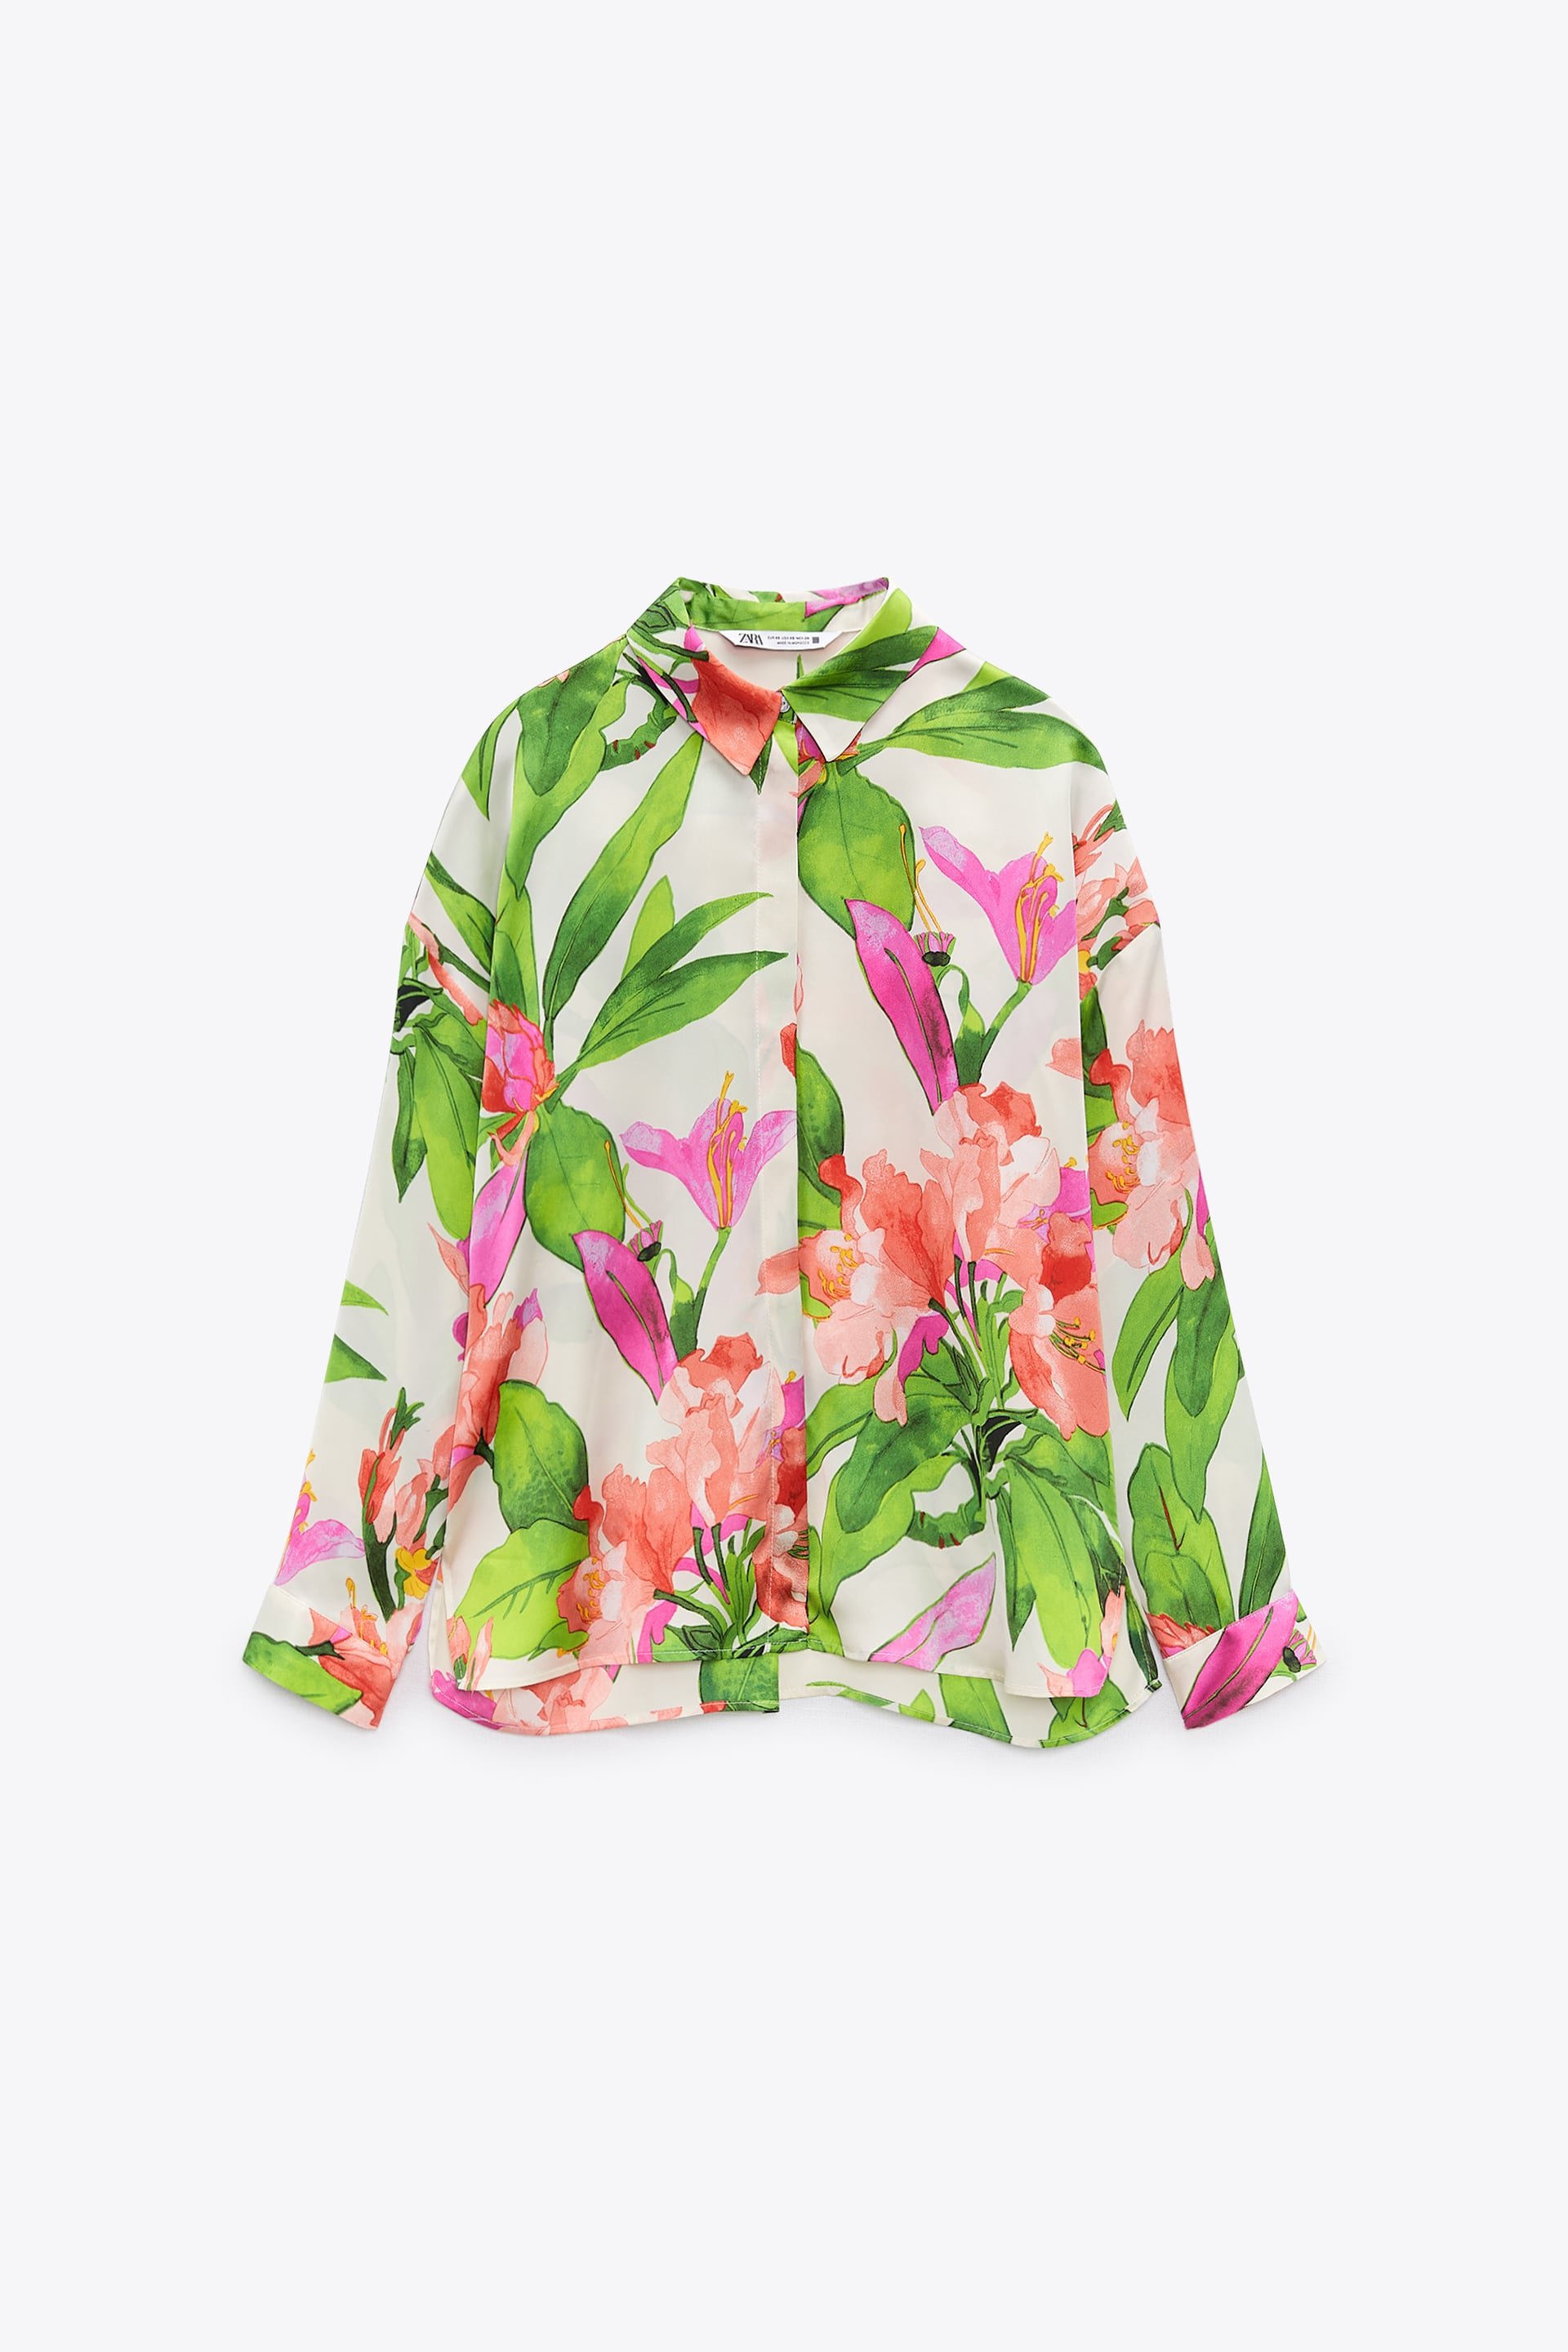 Zara Floral-Print Shirt in EcruGreen.jpg